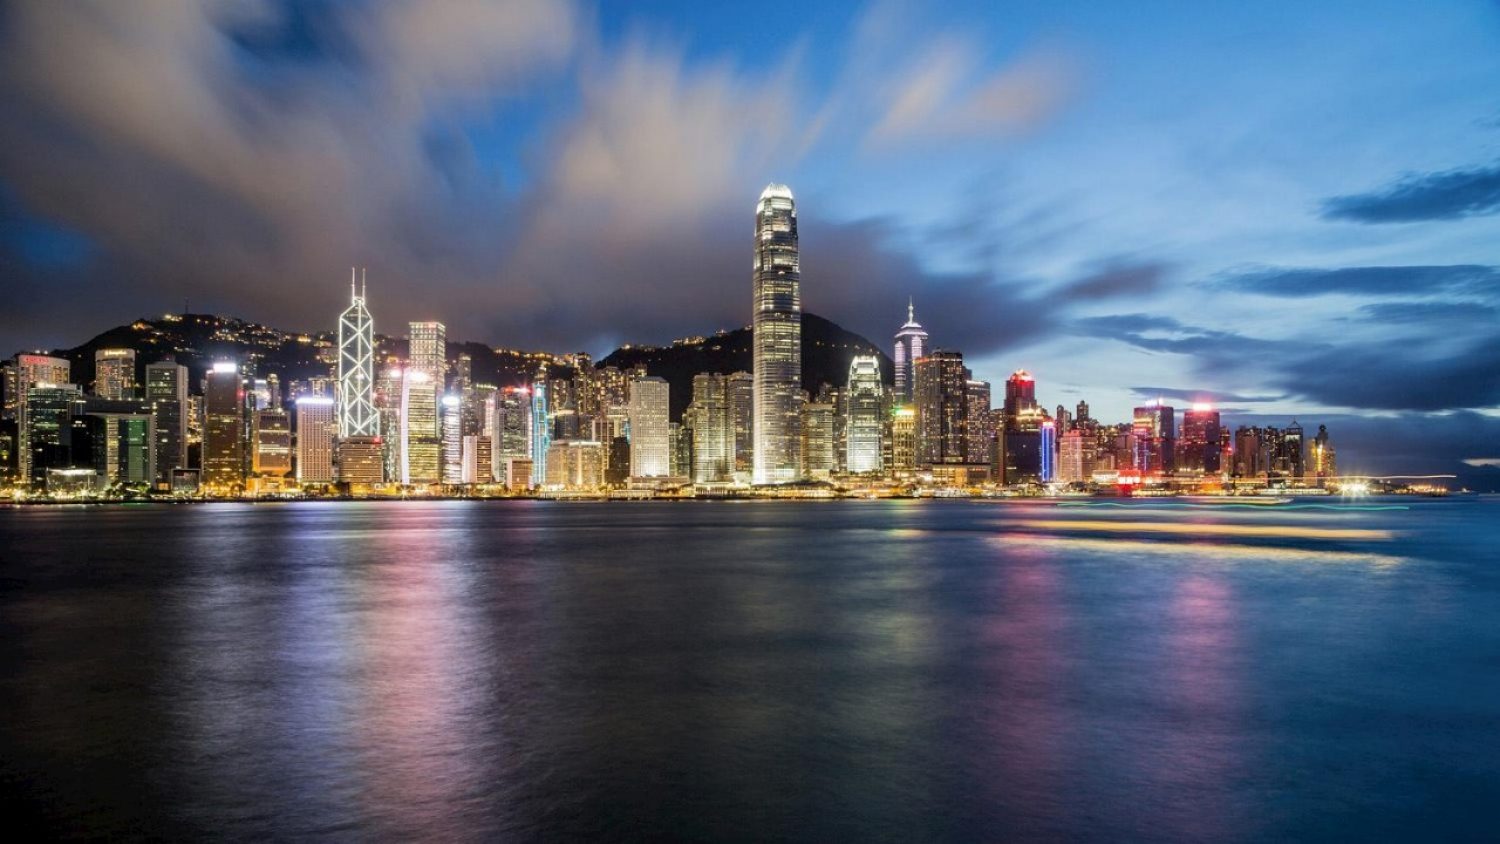 Hong Kong (Pixabay)